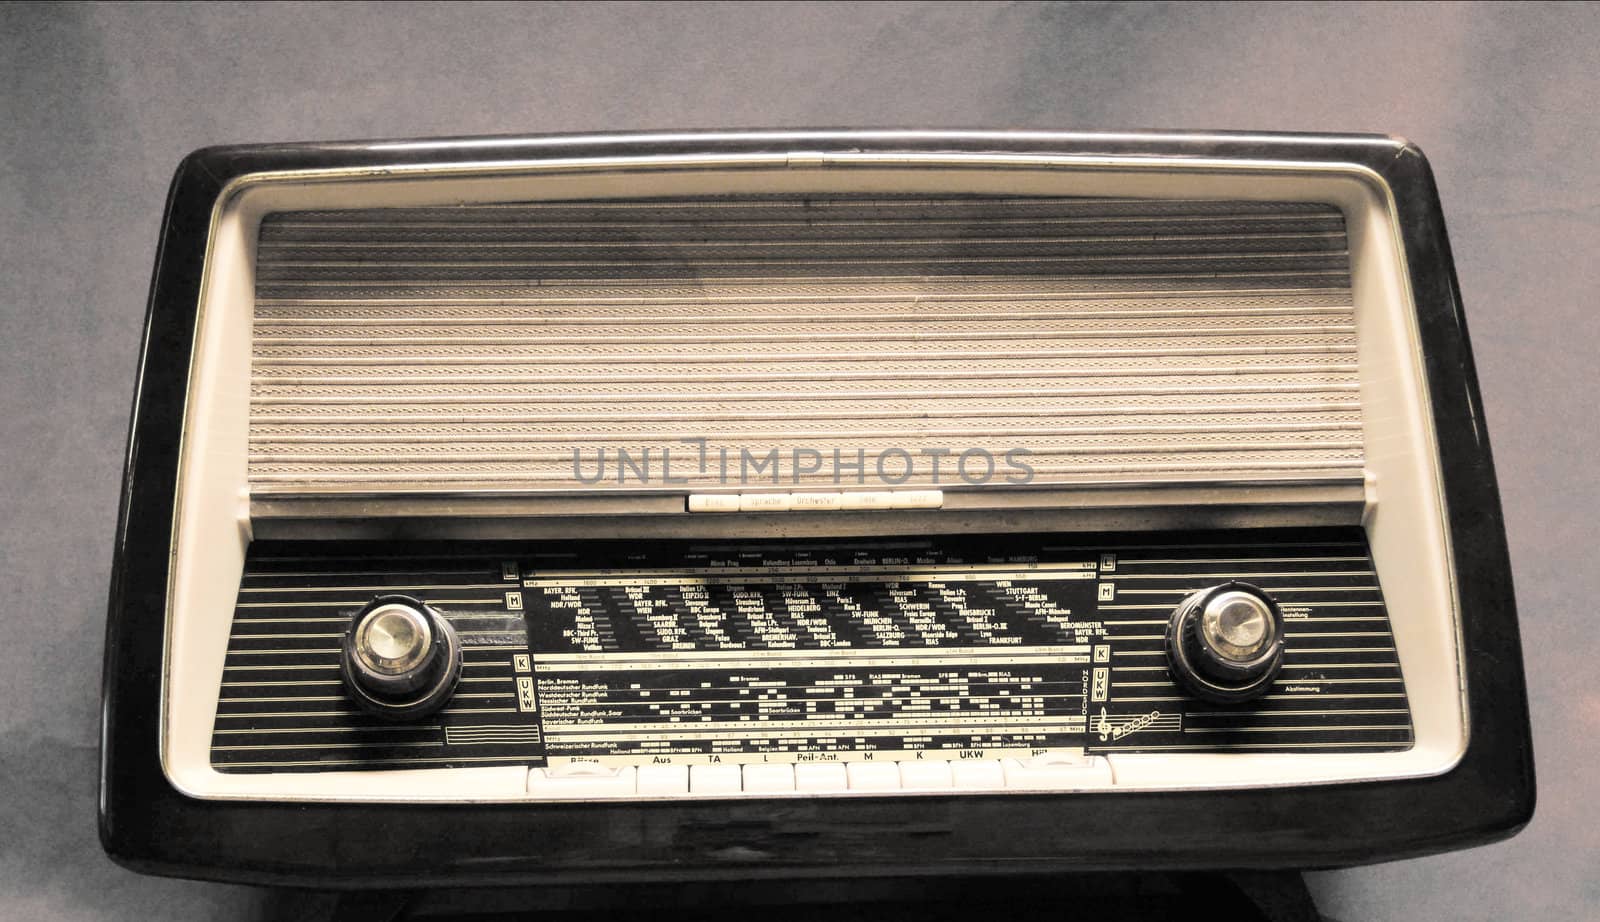 antique radio on vintage background by rainyrf